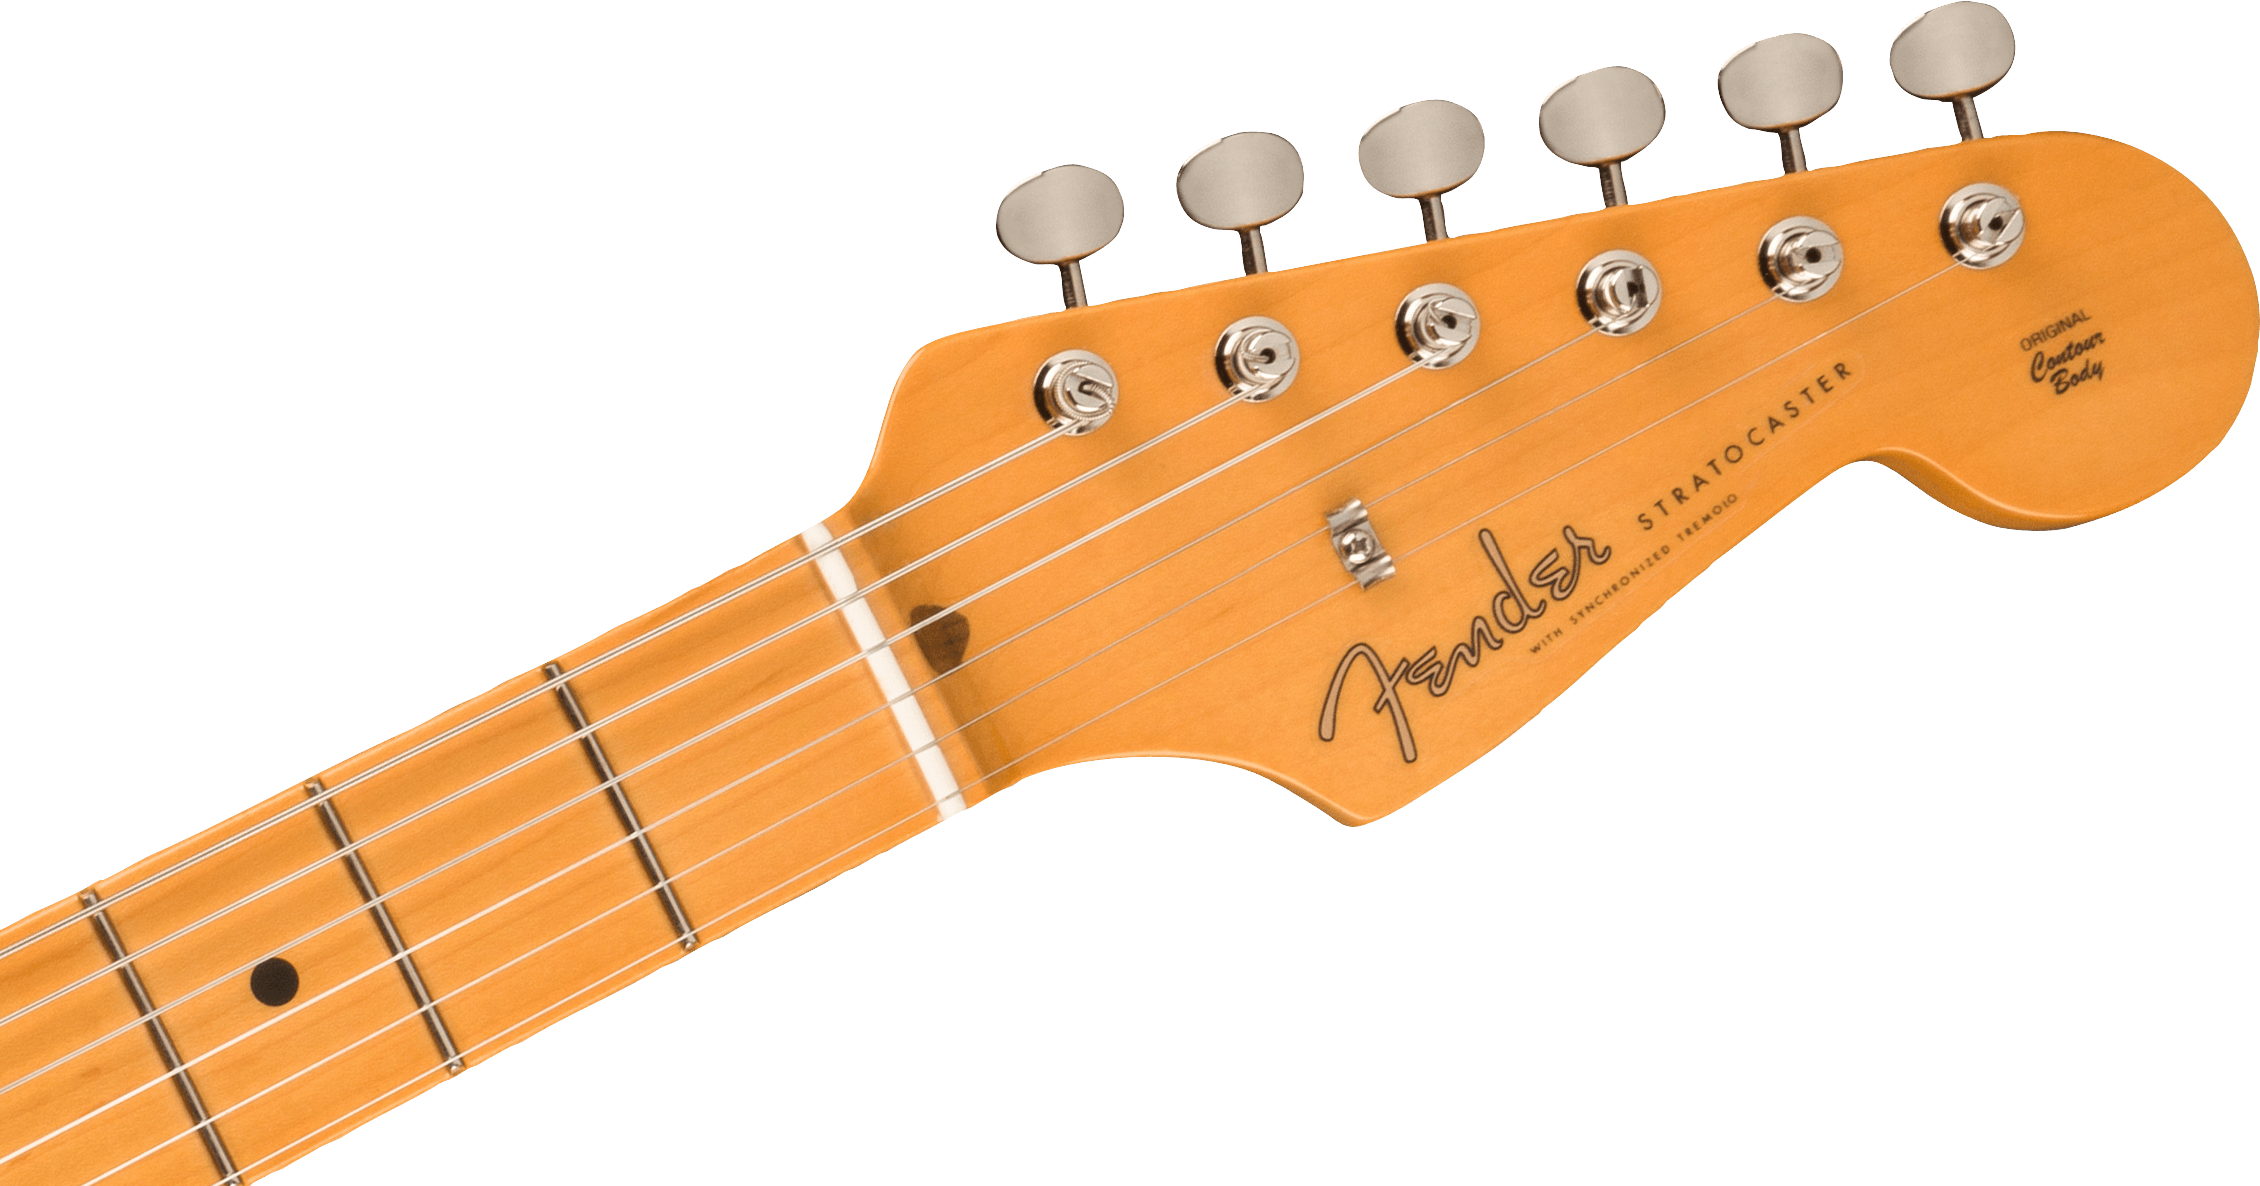 Fender American Vintage II 1957 Stratocaster®, Maple Fingerboard, 2-Color Sunburst